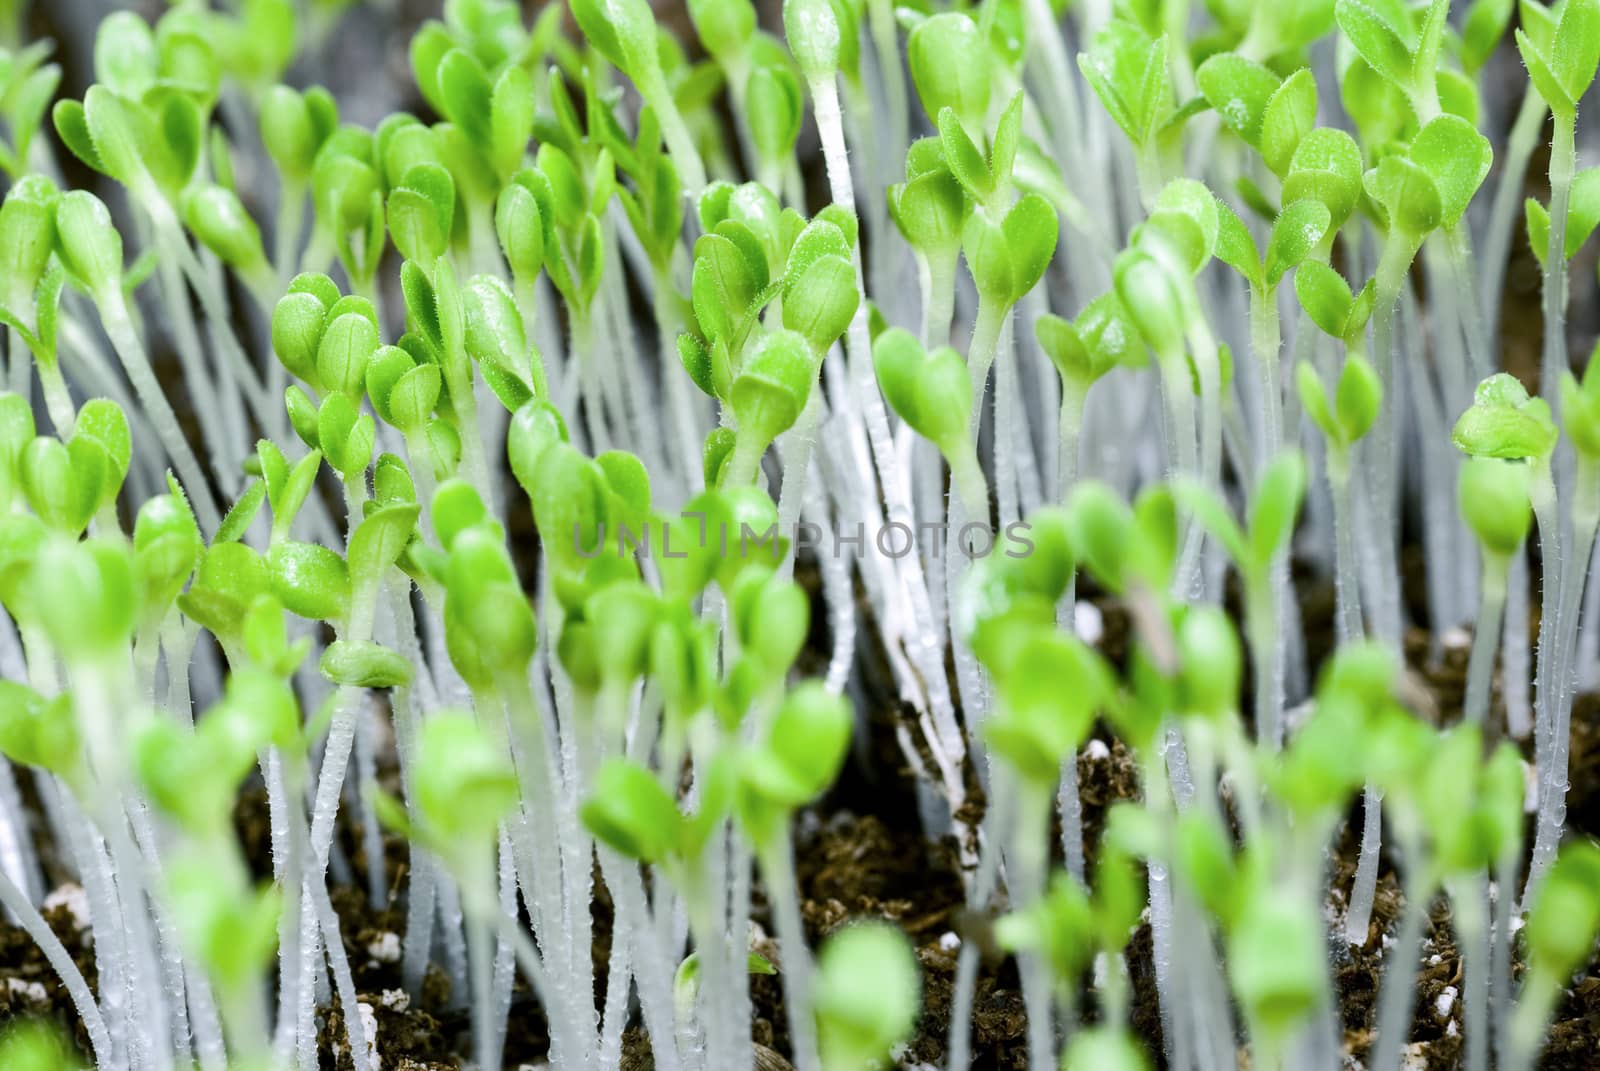 Macro shot of multiple little lettuce seedlings.